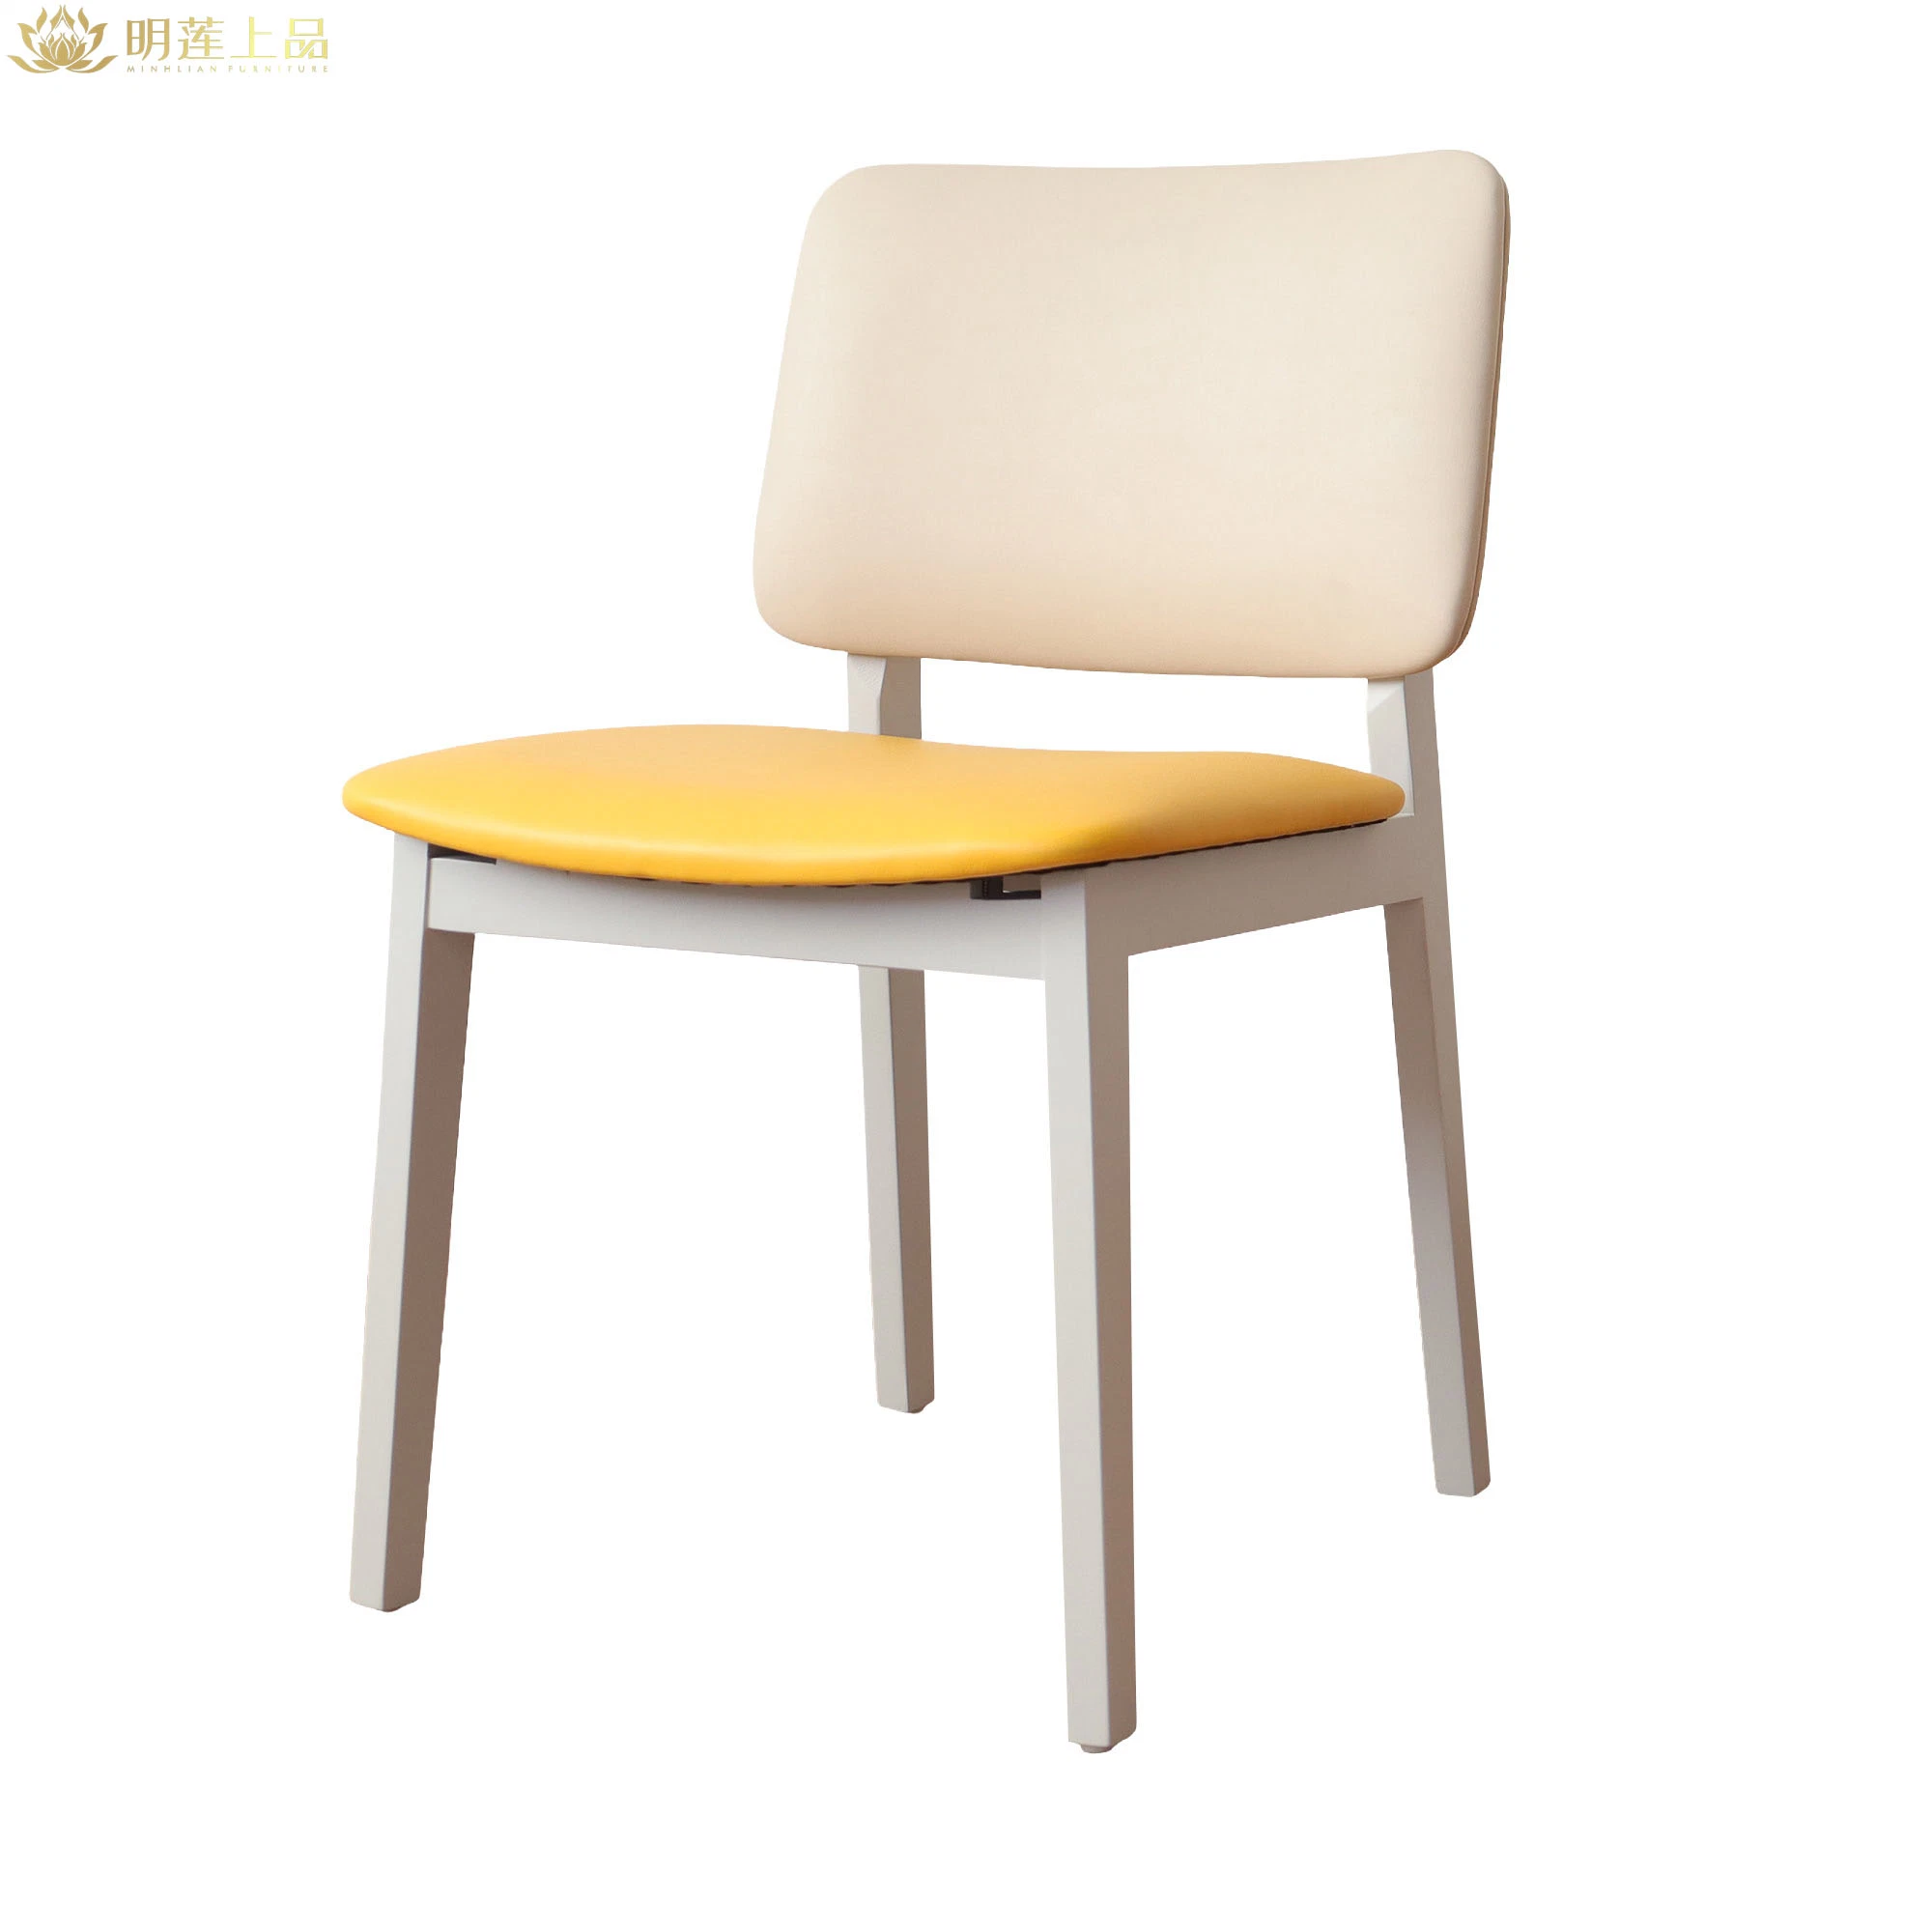 Design moderno Restaurante Solid Wood, cadeira amarela em pele PU, estofada Sala de jantar mobiliário Restaurante mobiliário Casa mobiliário Cafe cadeiras de madeira